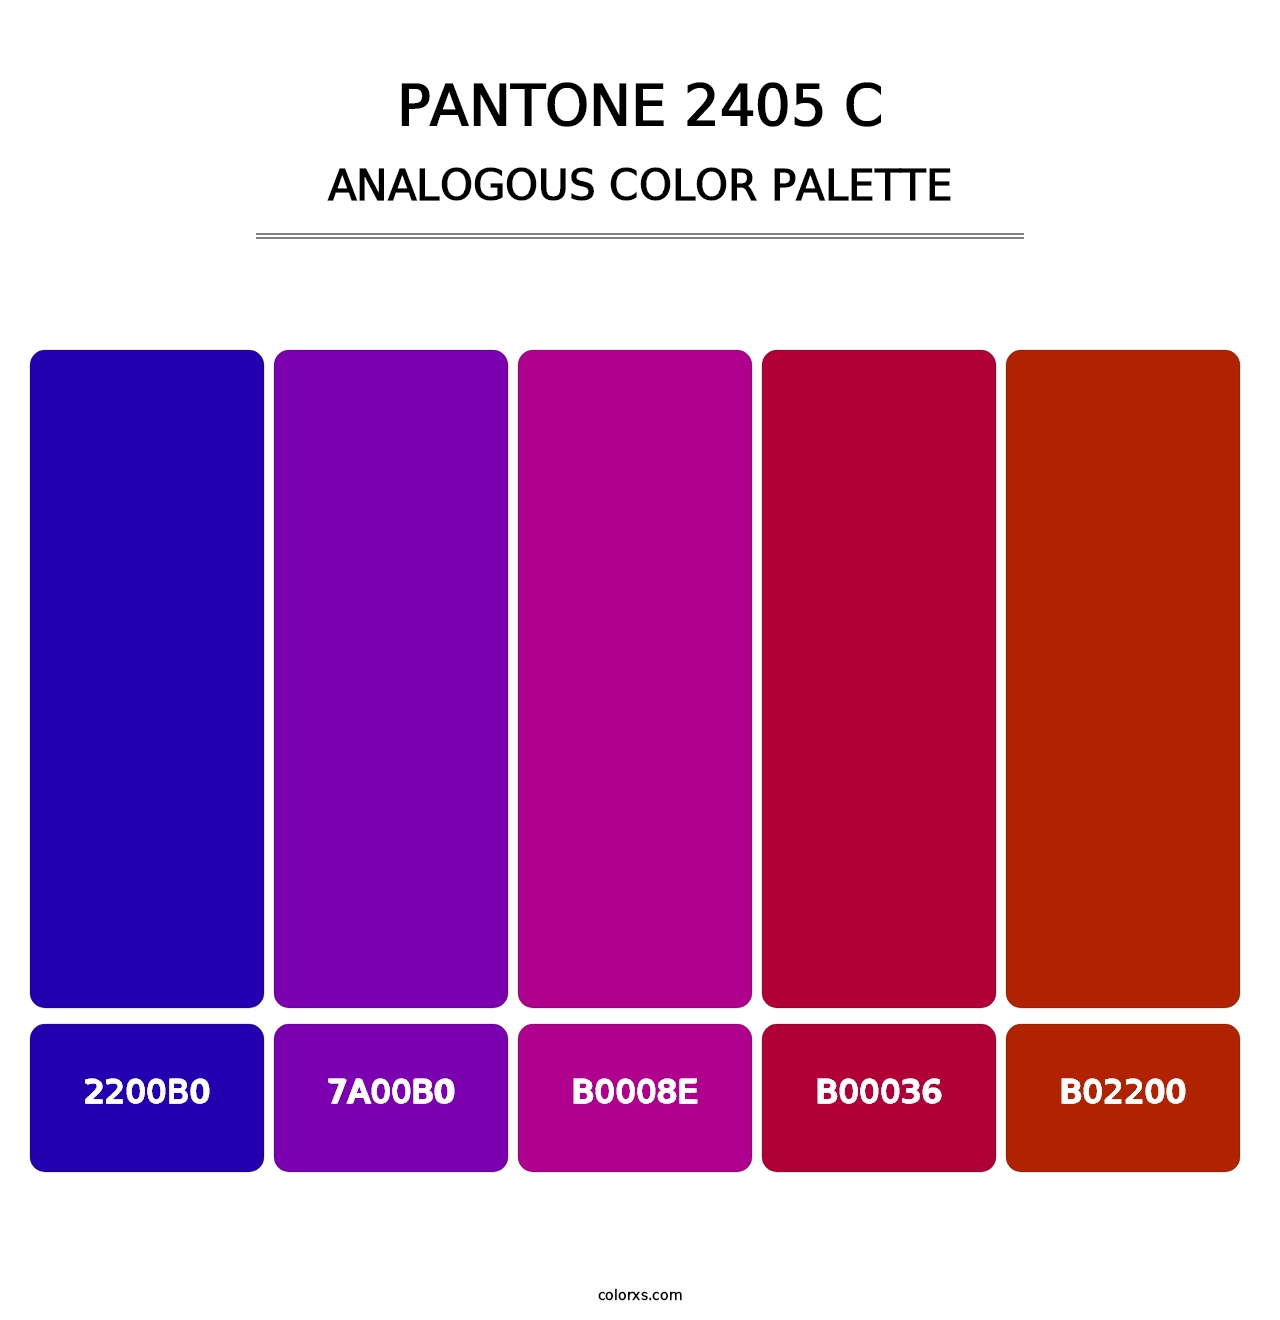 PANTONE 2405 C - Analogous Color Palette